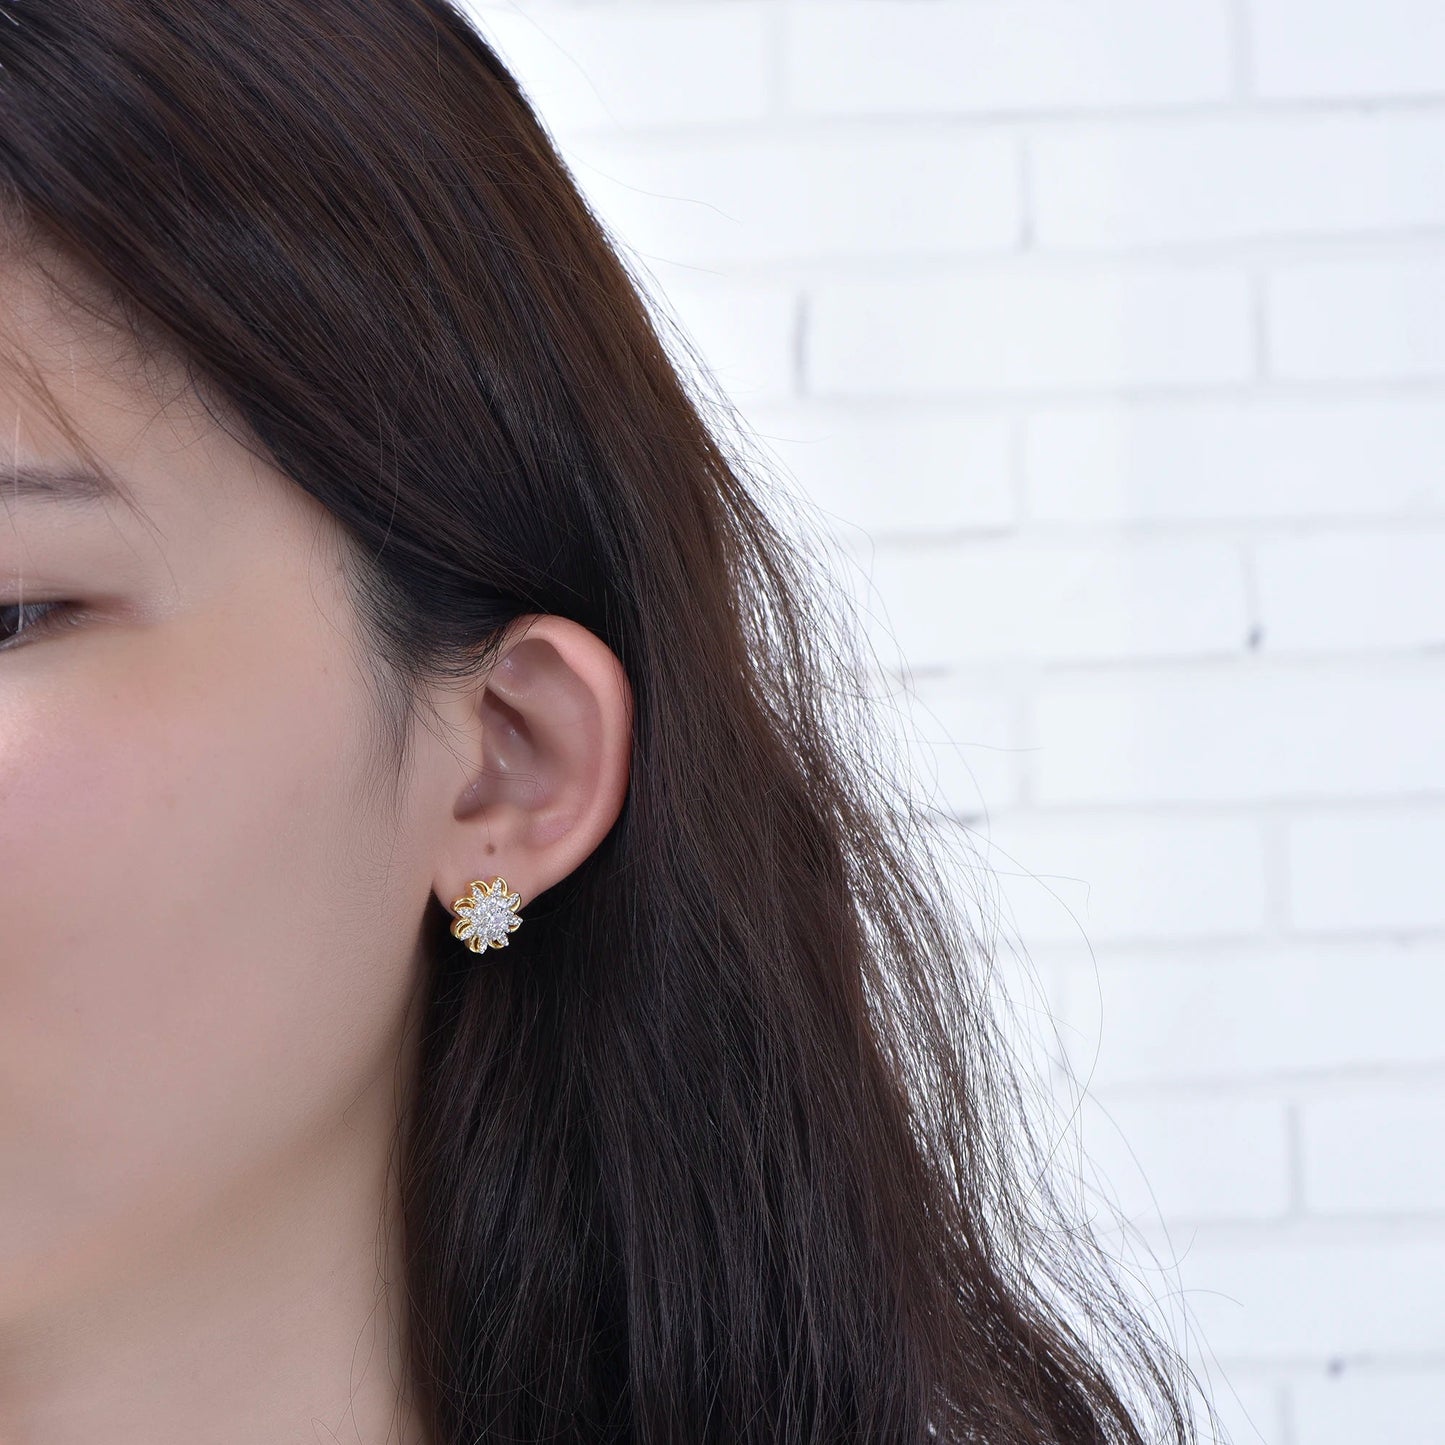 Spring Jewelry Luxury Women's Stud Earrings Wedding Statement Earrings Gold Flower Earrings For Gift Kirin Jewelry